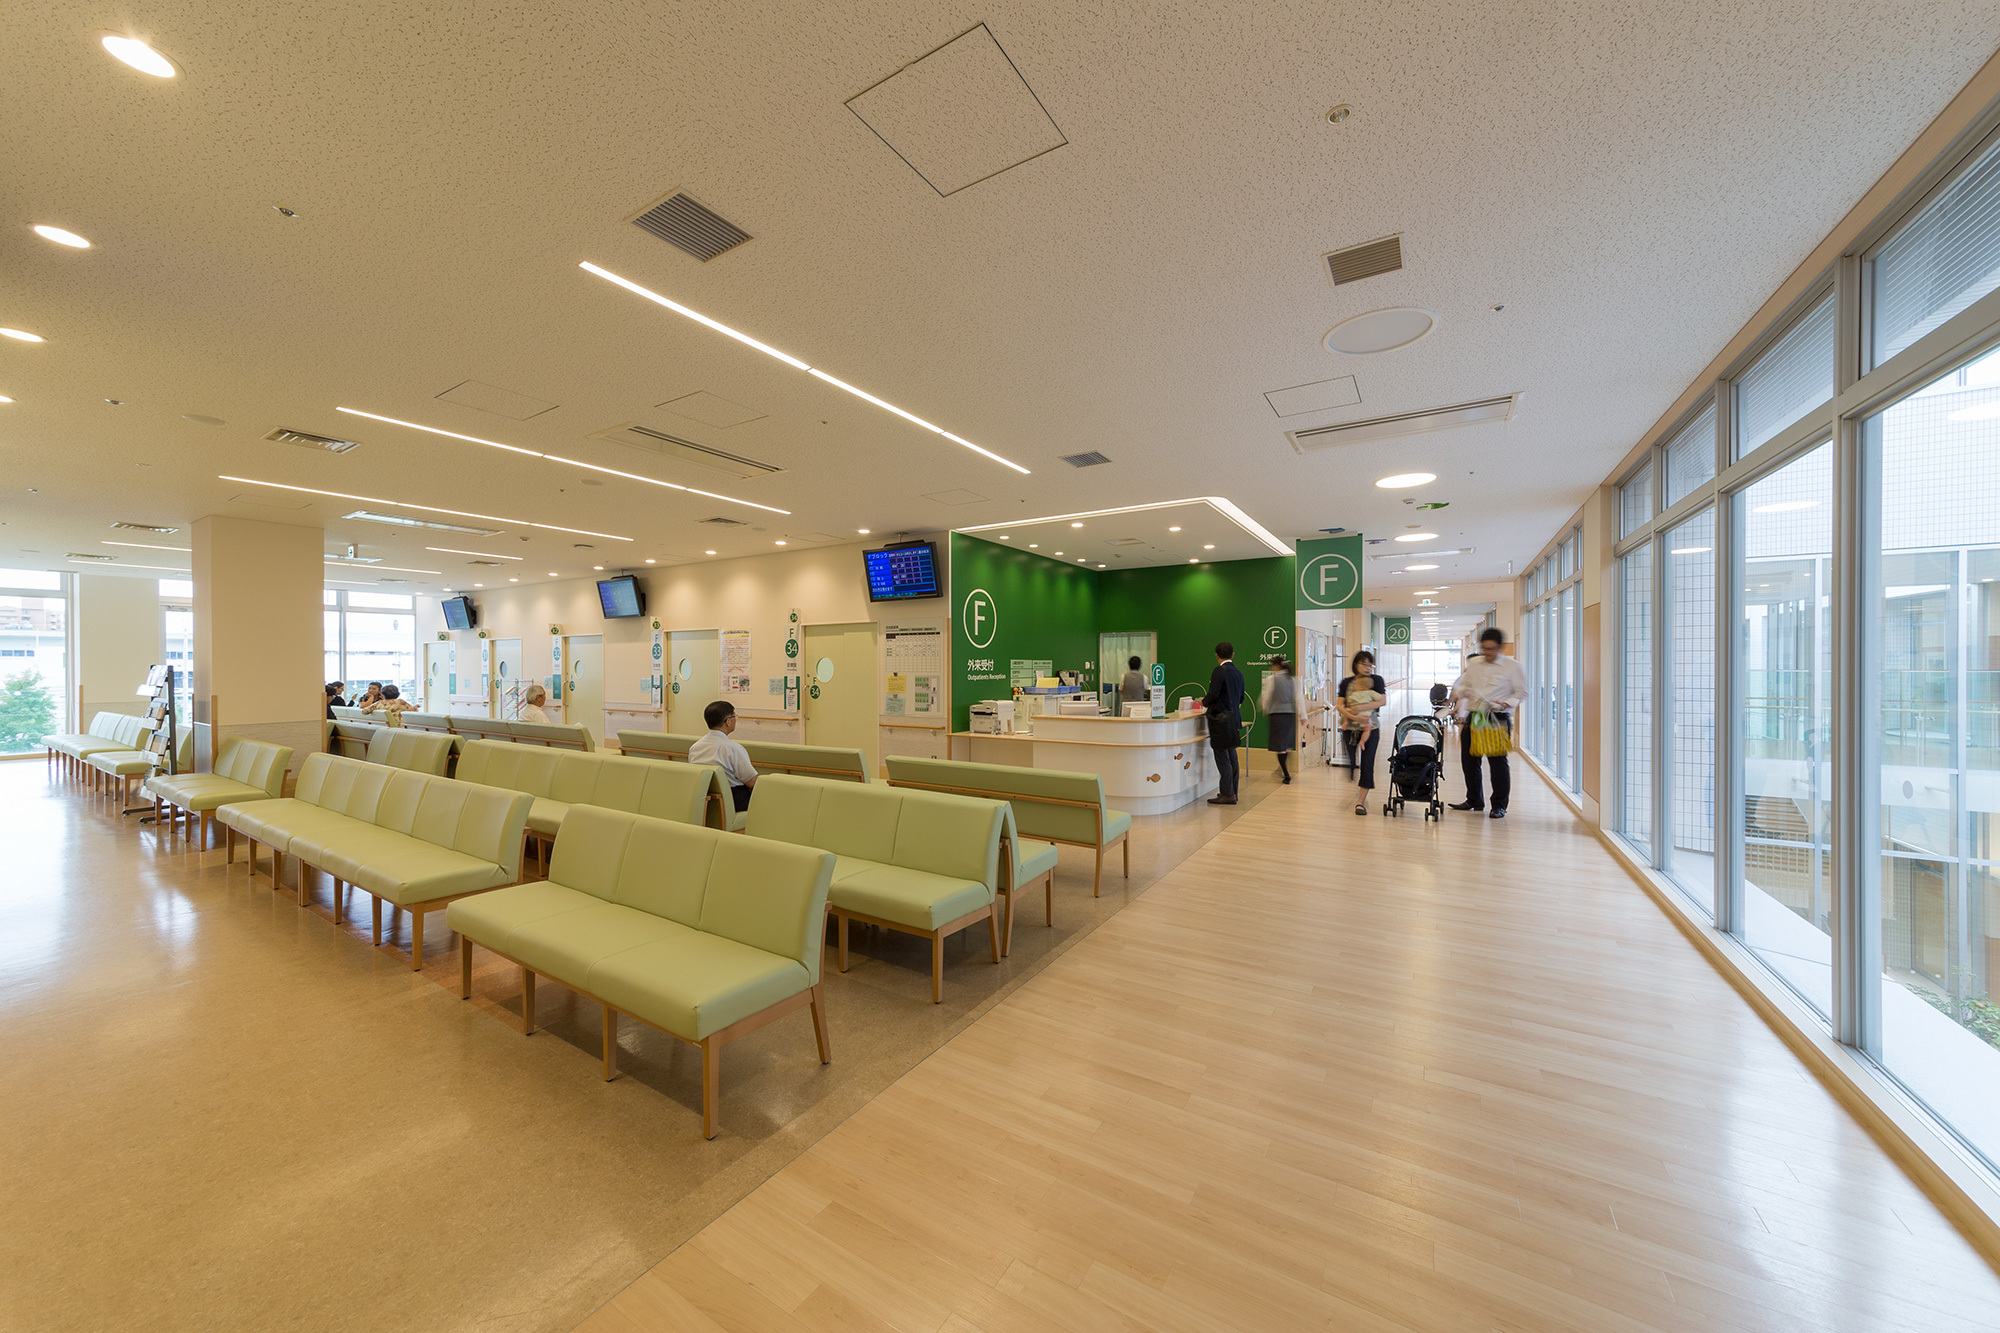 常看常新!8年前的日本医院设计项目,现在看也不过时